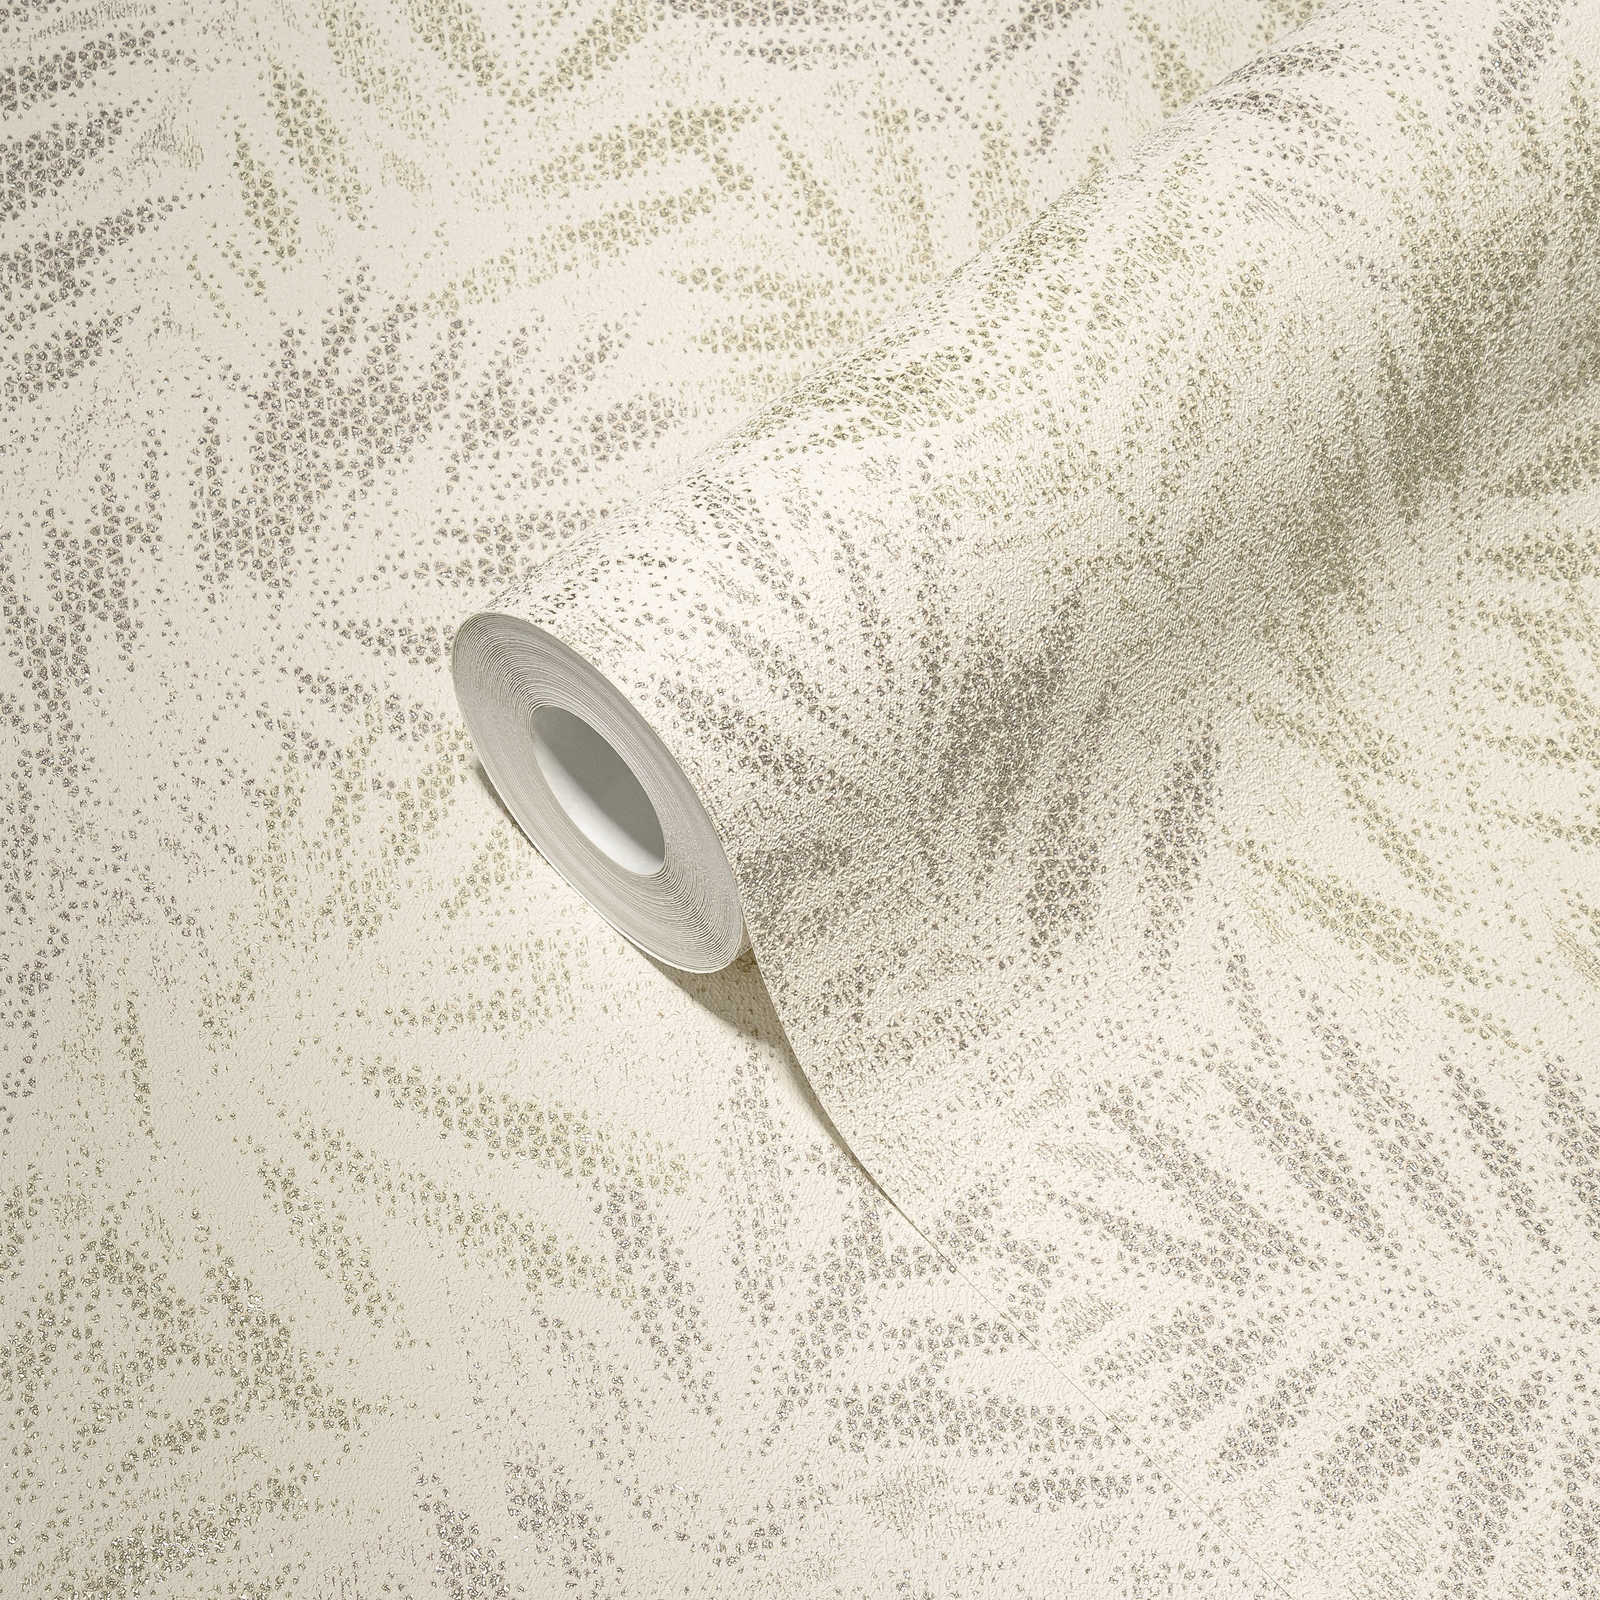             Papel pintado no tejido con motivo de hojas brillantes - blanco, gris, plata
        